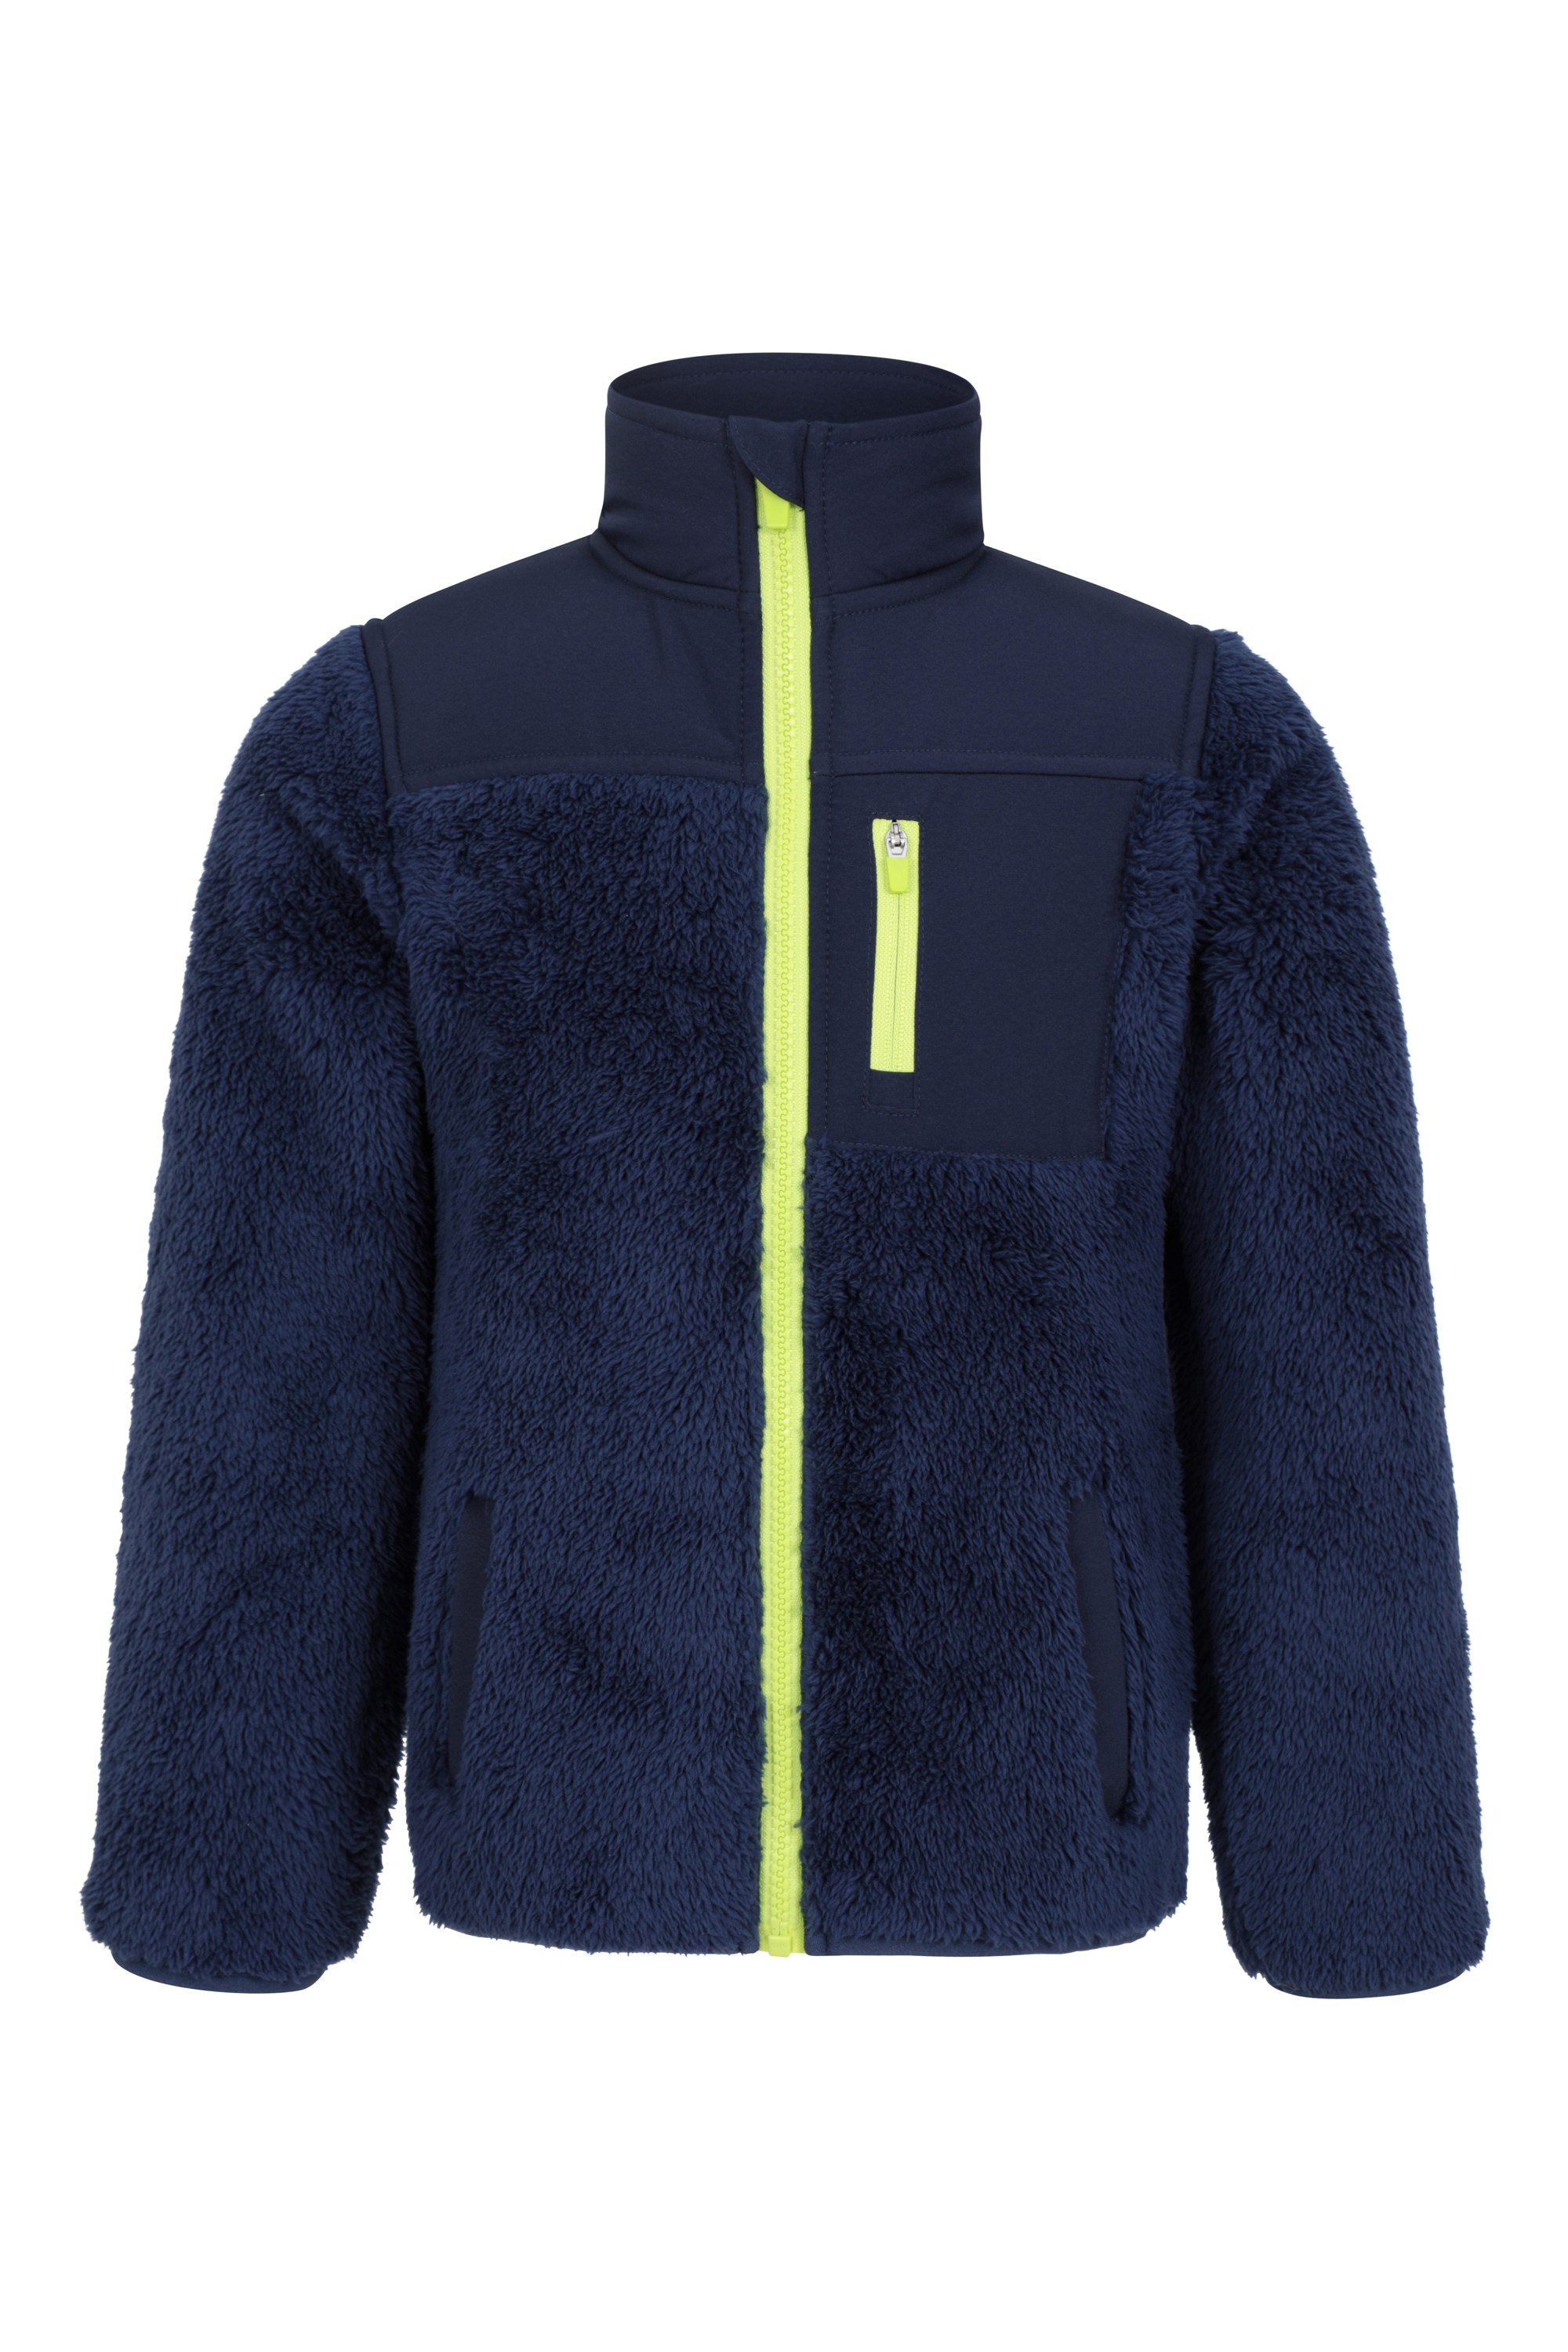 Soft Childrens Sweater Walking & Outdoors Colour Block Panels for Winter Lightweight Boys & Girls Top Mountain Warehouse Ashbourne Kids Full Zip Fleece